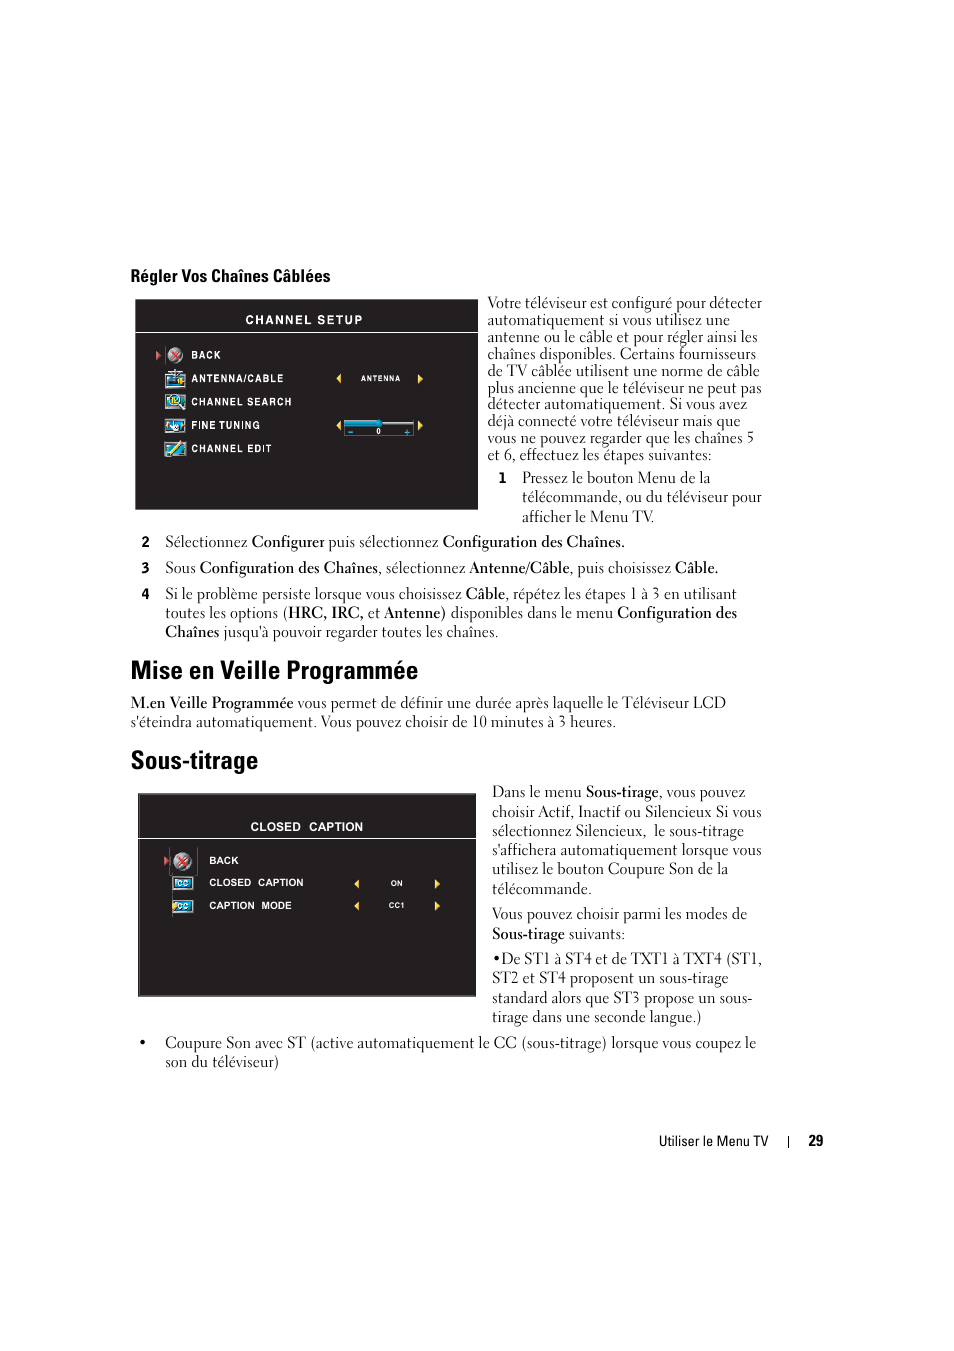 Mise en veille programmée, Sous-titrage | Dell LCD TV W2606C Manuel d'utilisation | Page 29 / 60